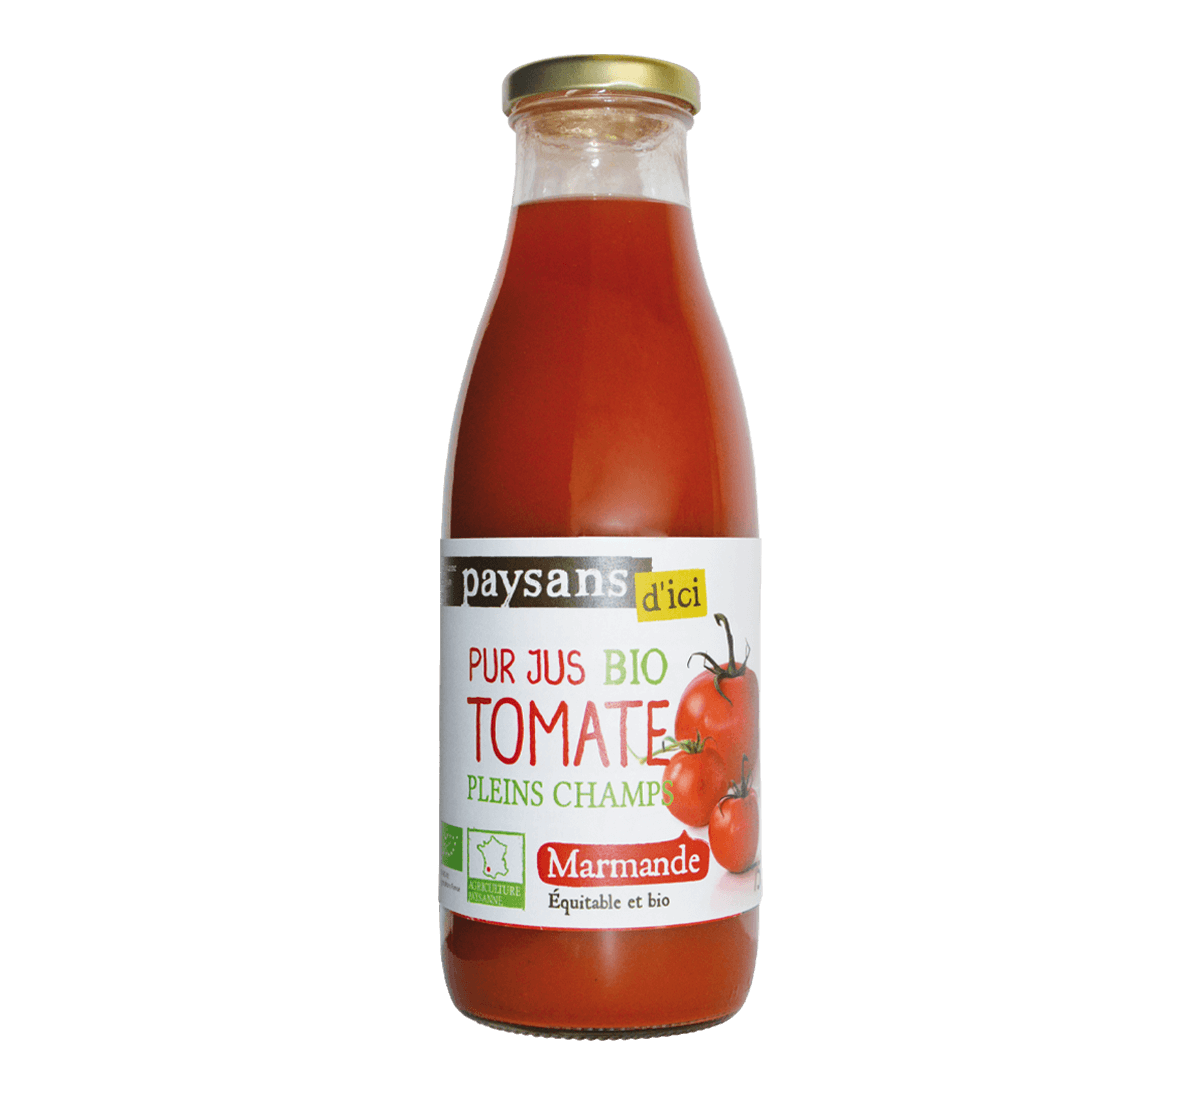 Paysans d'Ici - Pur jus bio de tomate plein champs de Marmande et issu du commerce équitable